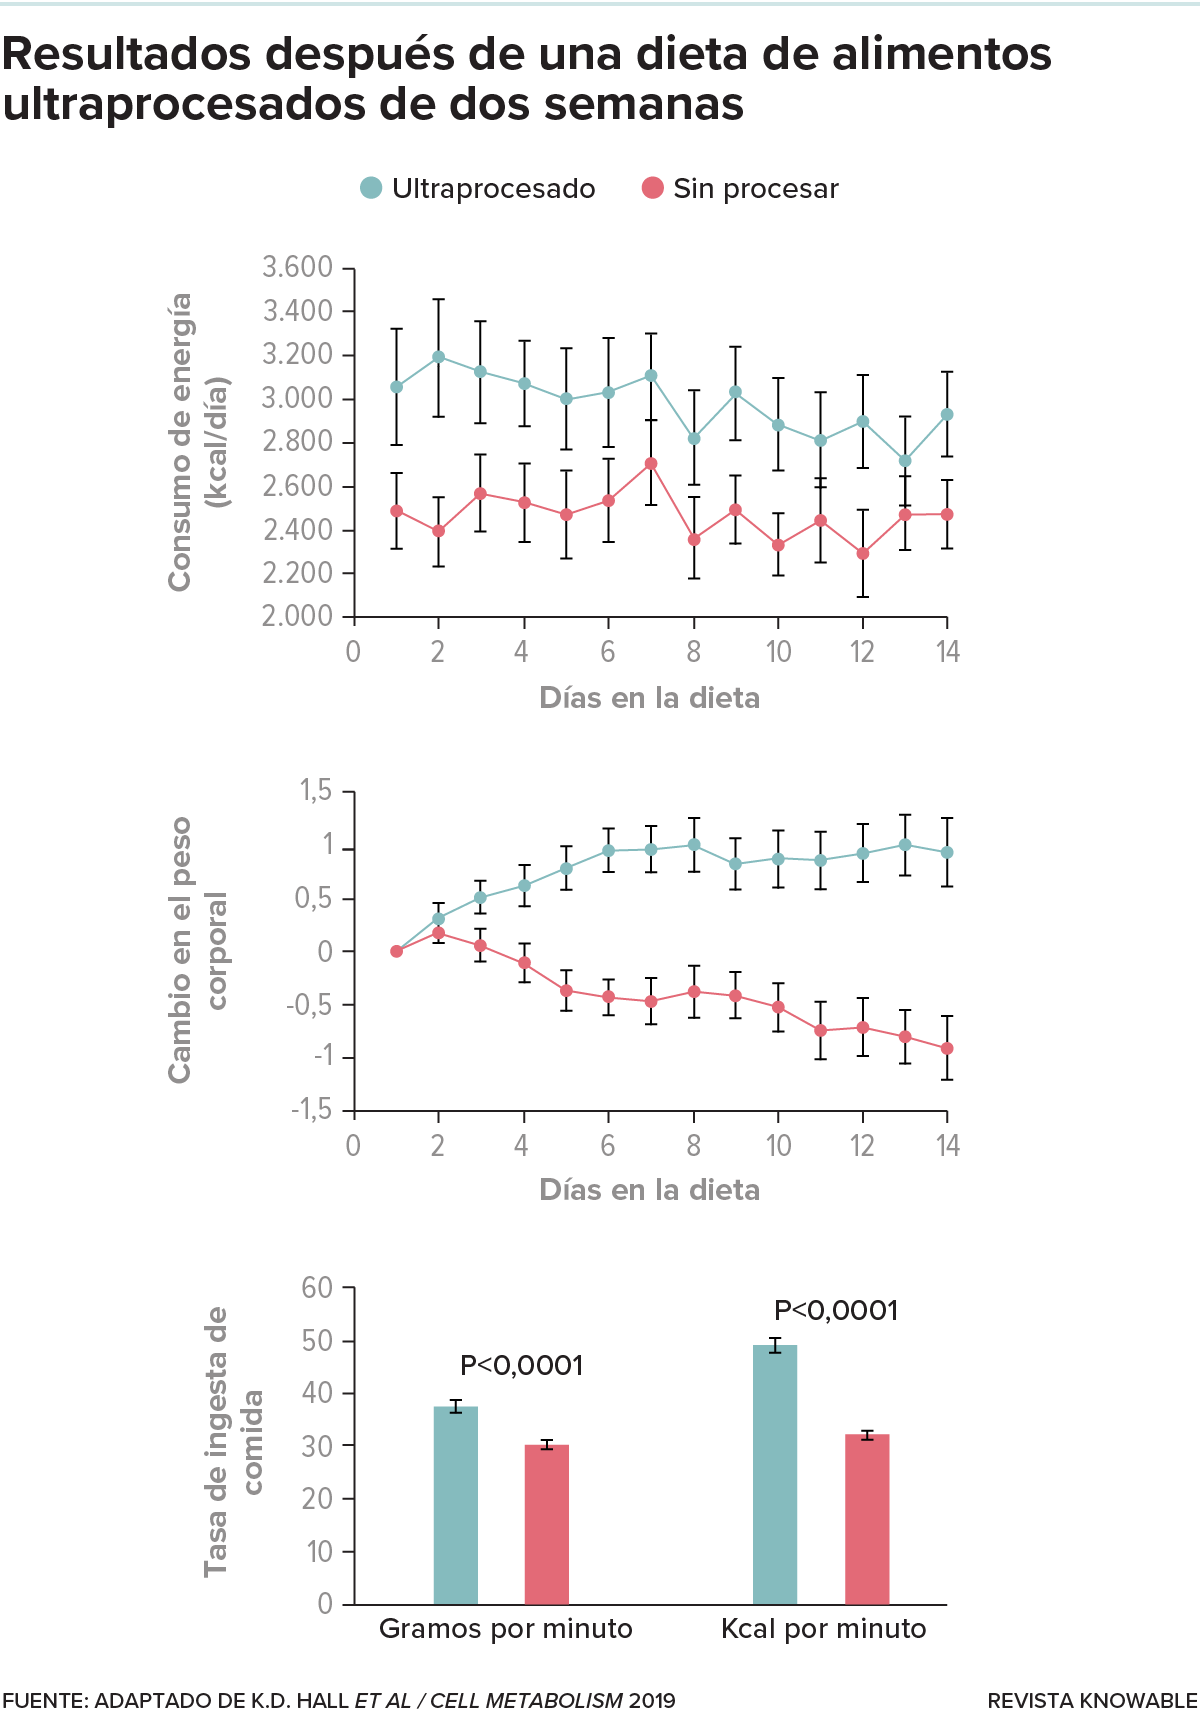 Tres gráficos. El de arriba muestra una ingesta de calorías consistentemente mayor durante dos semanas con una dieta ultraprocesada en comparación con una dieta no procesada. El gráfico del medio muestra el aumento de peso para el grupo de ultraprocesados, y el gráfico inferior muestra una tasa de alimentación más rápida para ese grupo.